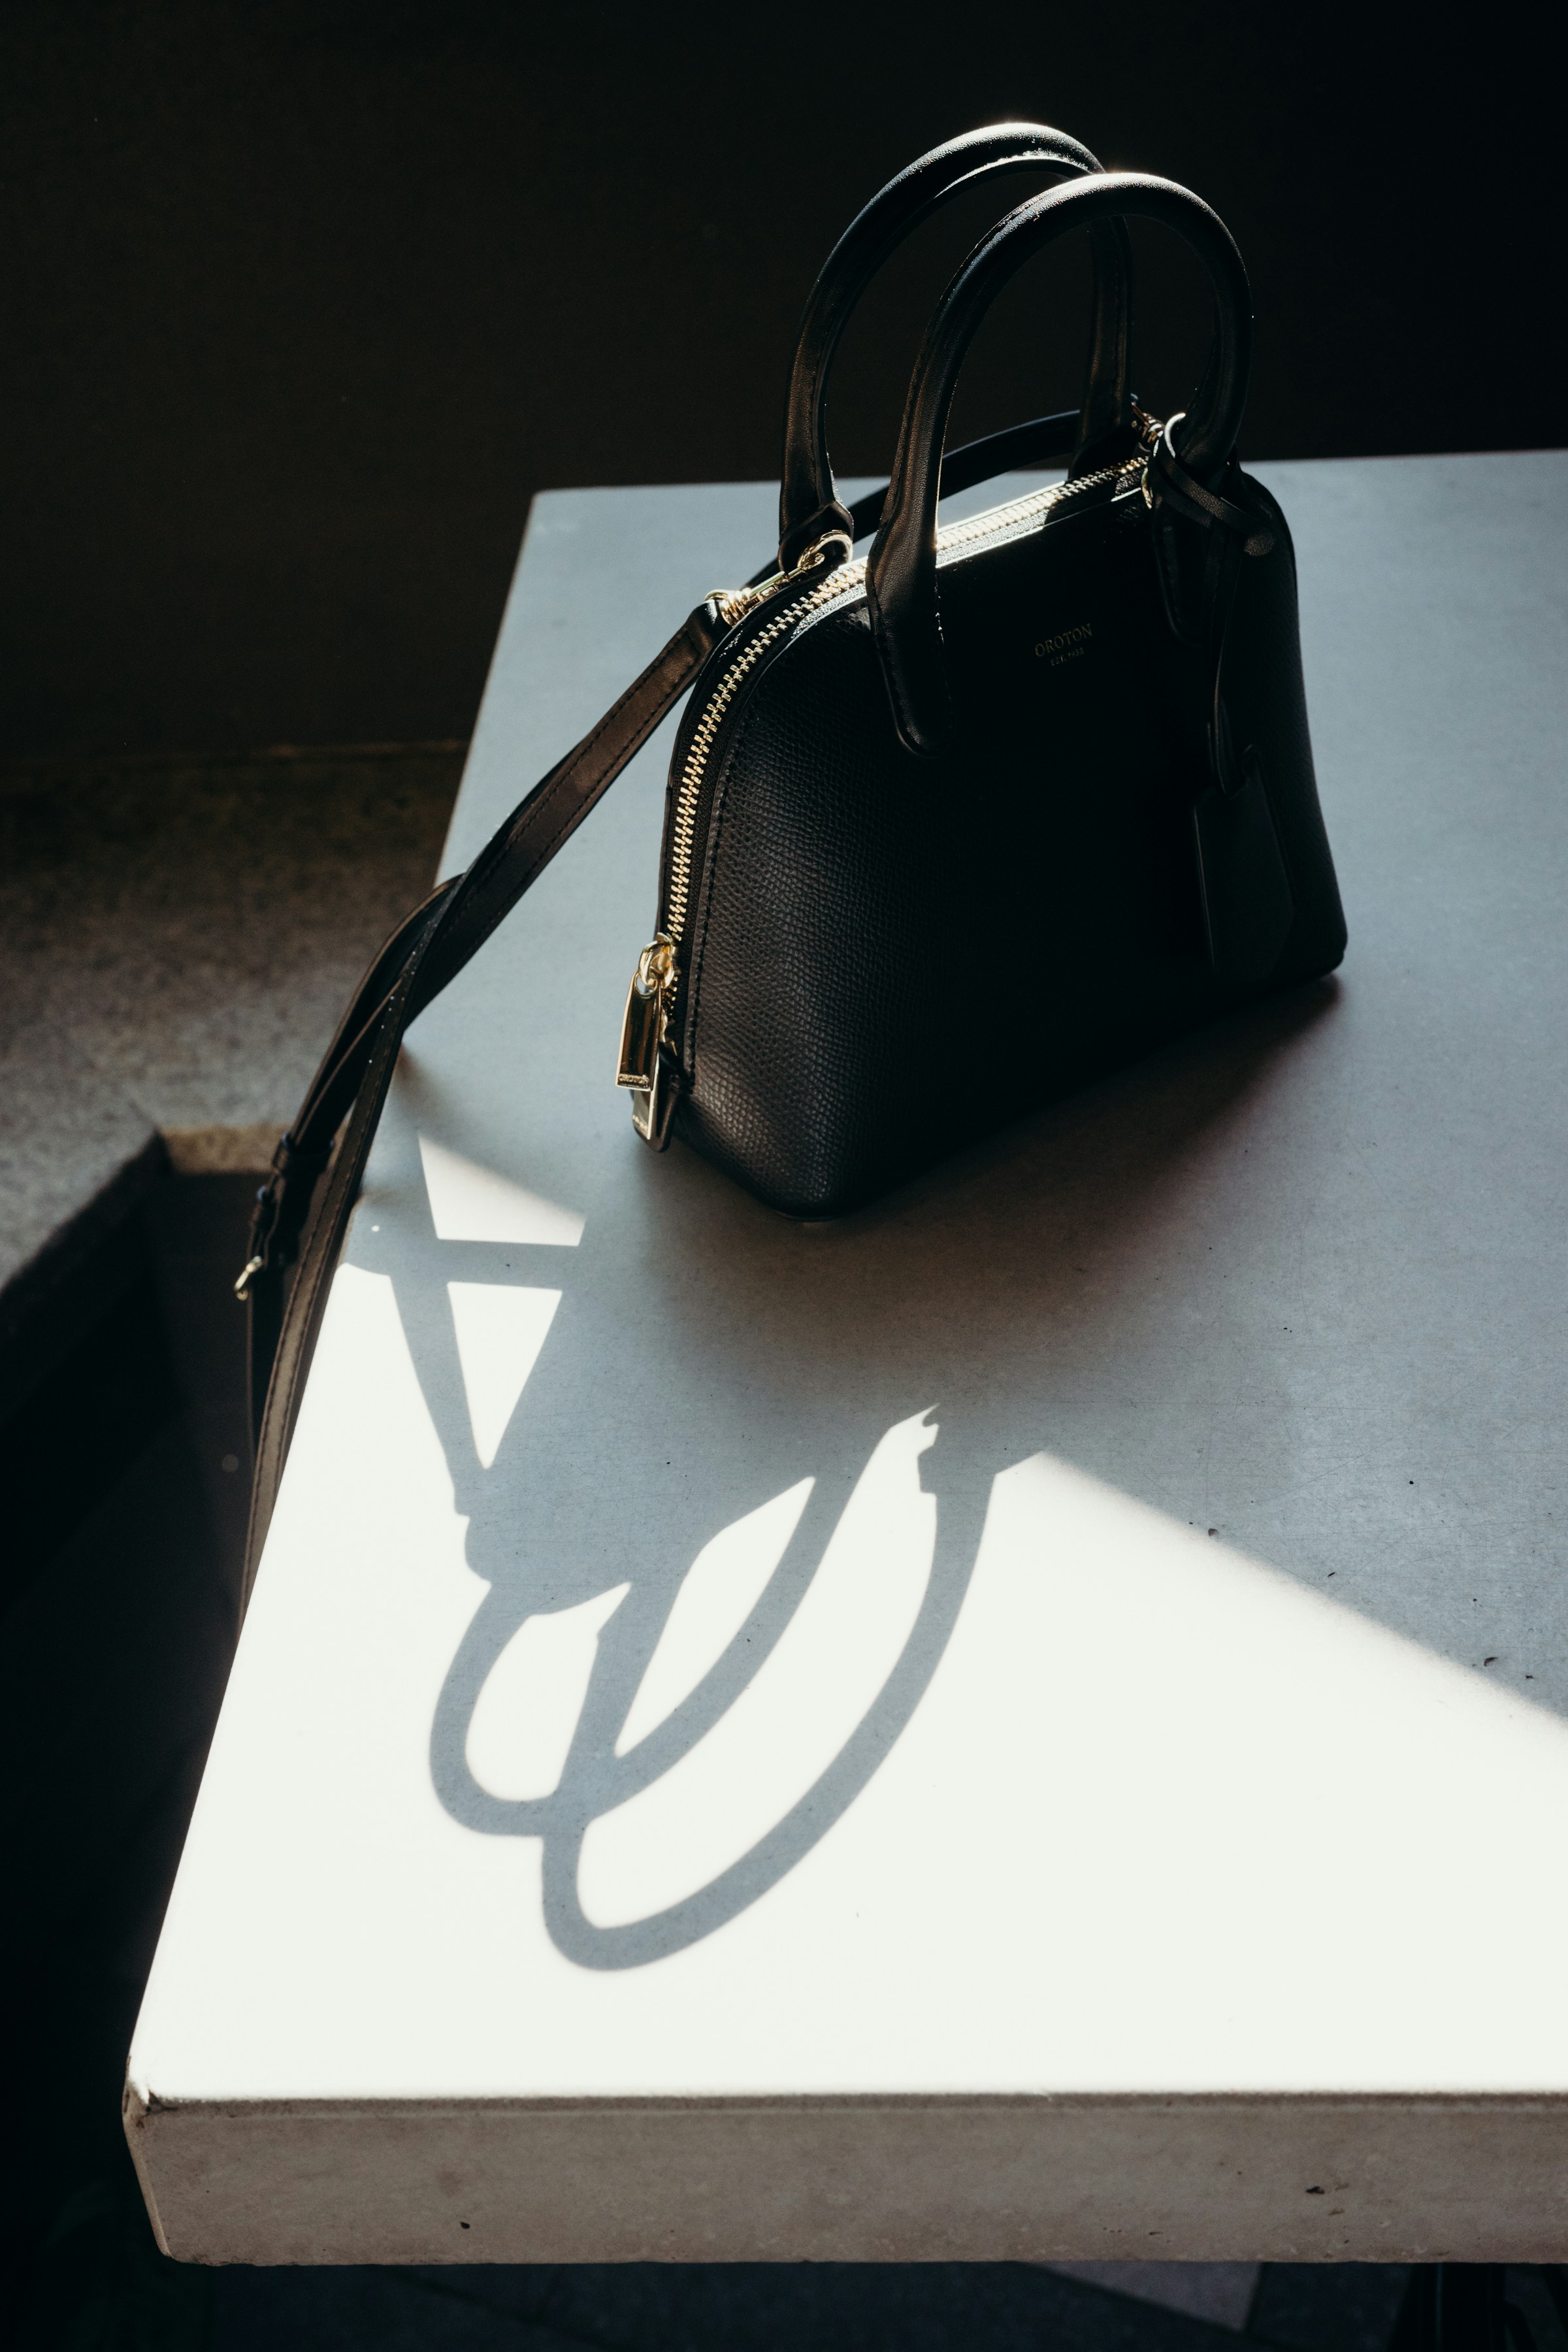 Un sac à main noir sur une table | Source : Unsplash